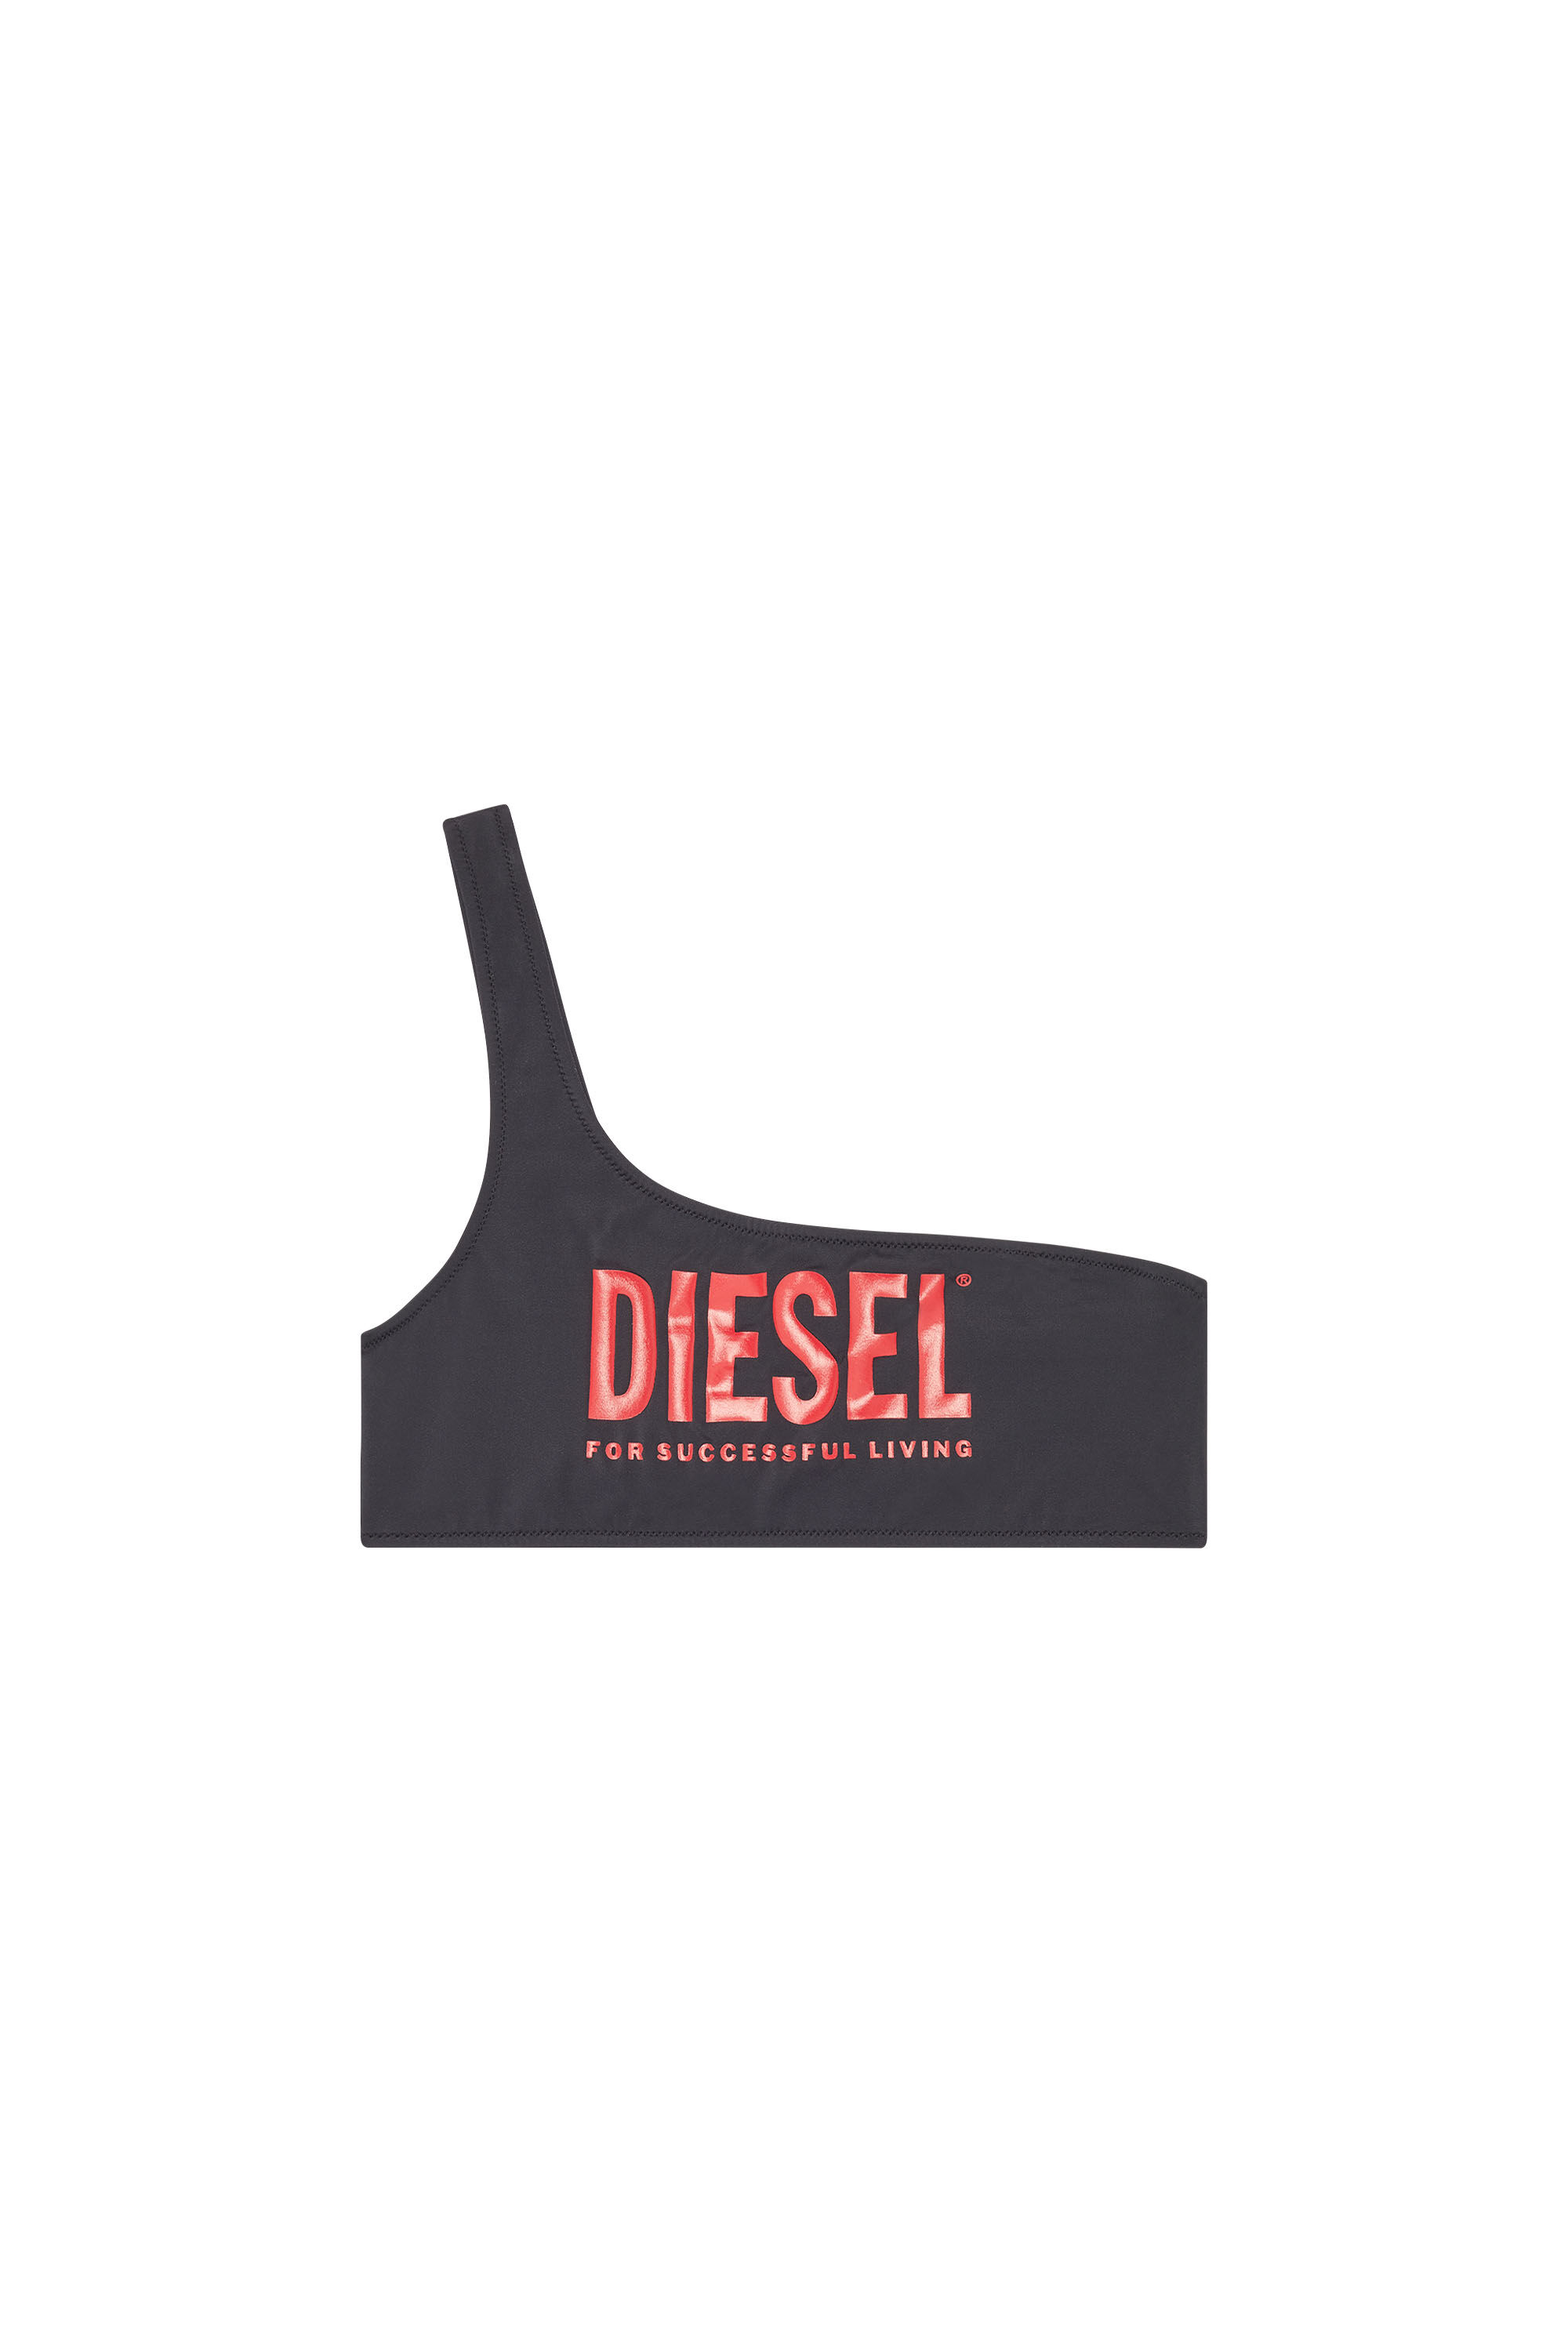 Diesel - BFB-MENDLA, Black - Image 1